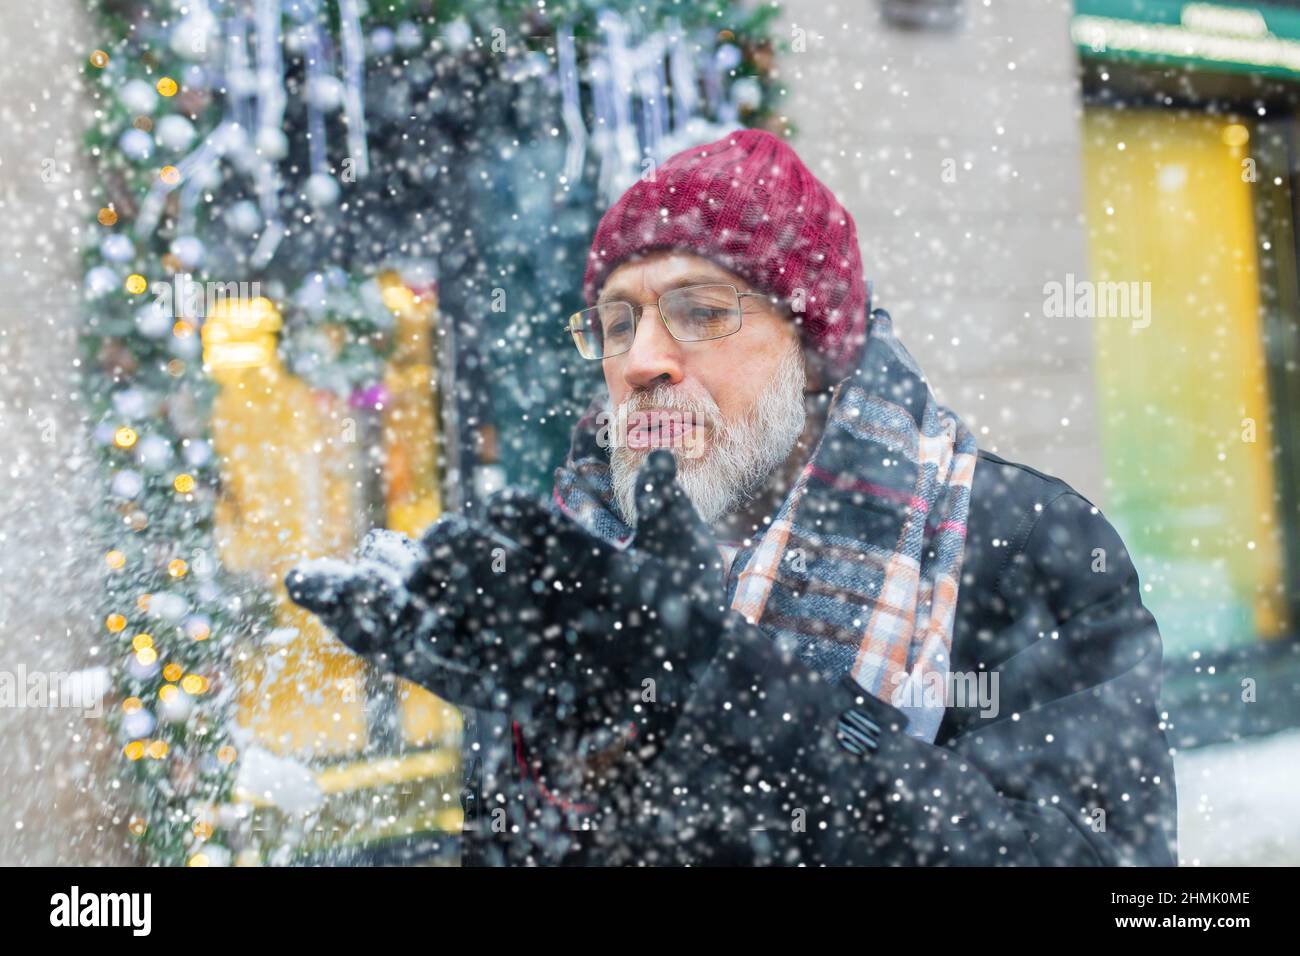 heureux homme mature en hiver marché de noël en plein air avec paysage urbain en arrière-plan Banque D'Images